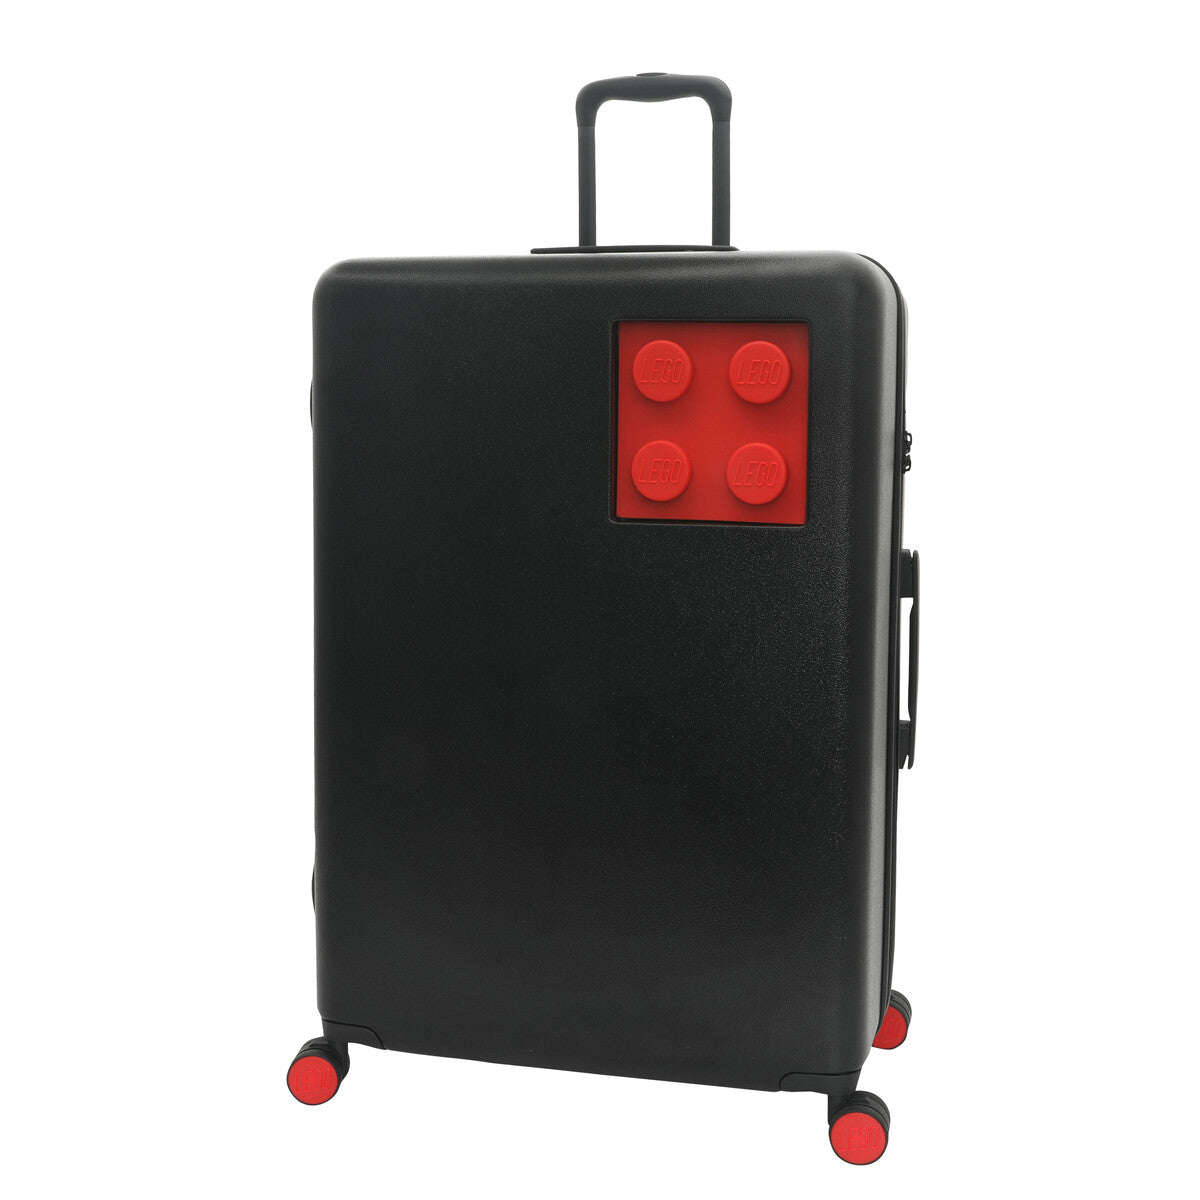 LEGO® Brick 2x2 28" L Luggage, Black/Bright Red